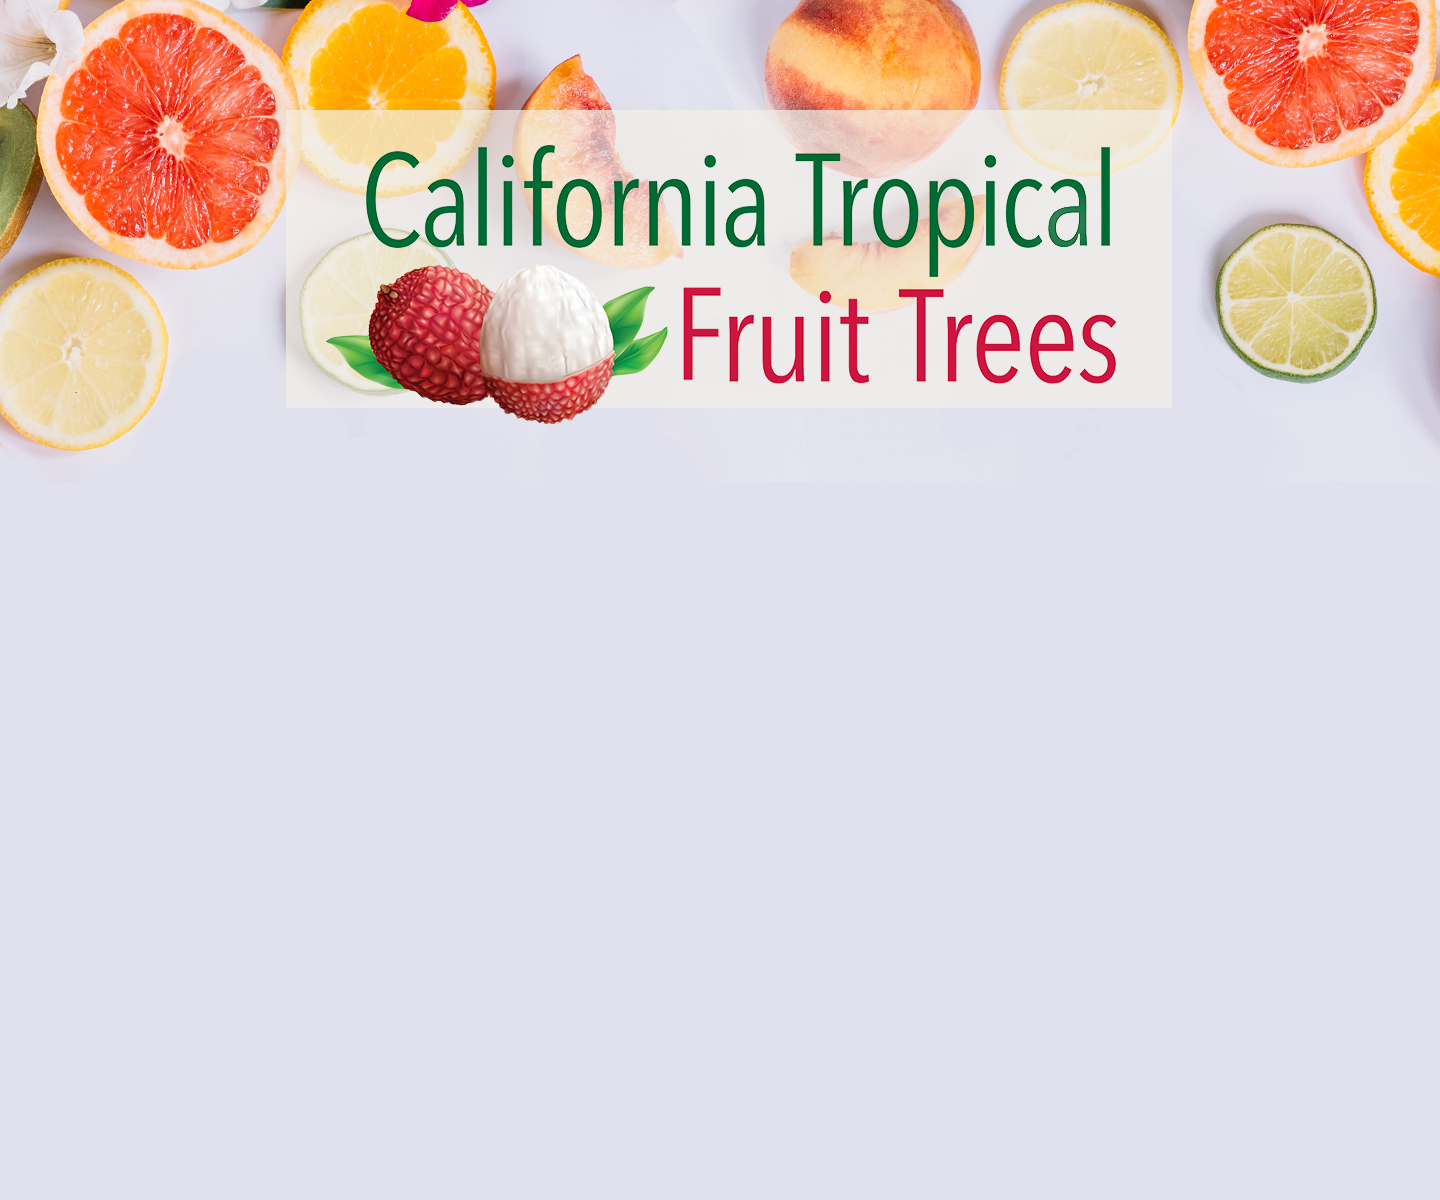 Vitamin tree fruit nursery